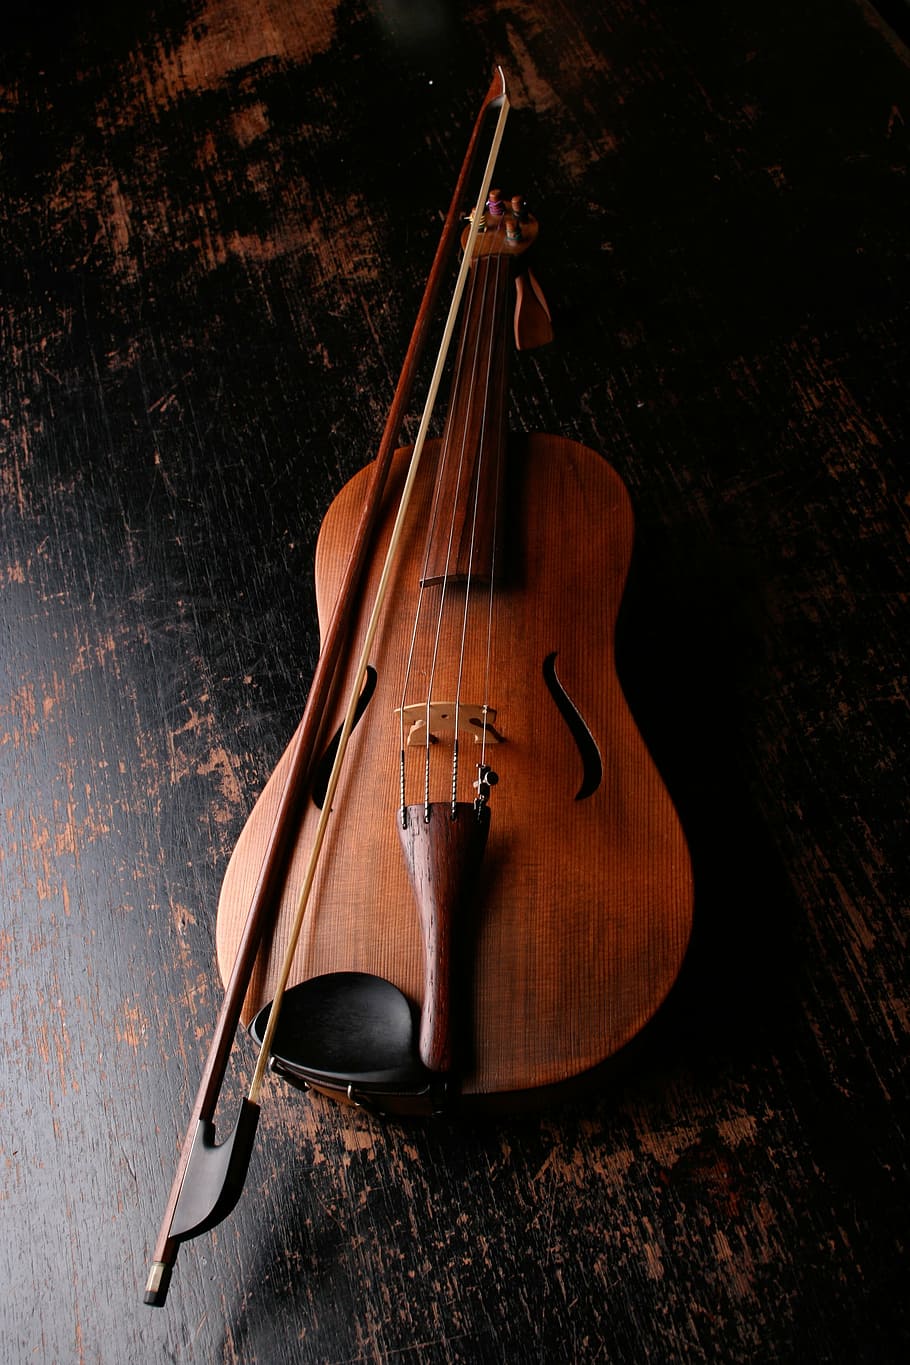 violino de madeira marrom, violino, instrumento musical, música, som, música clássica, instrumento, clássico, madeira, instrumento de cordas